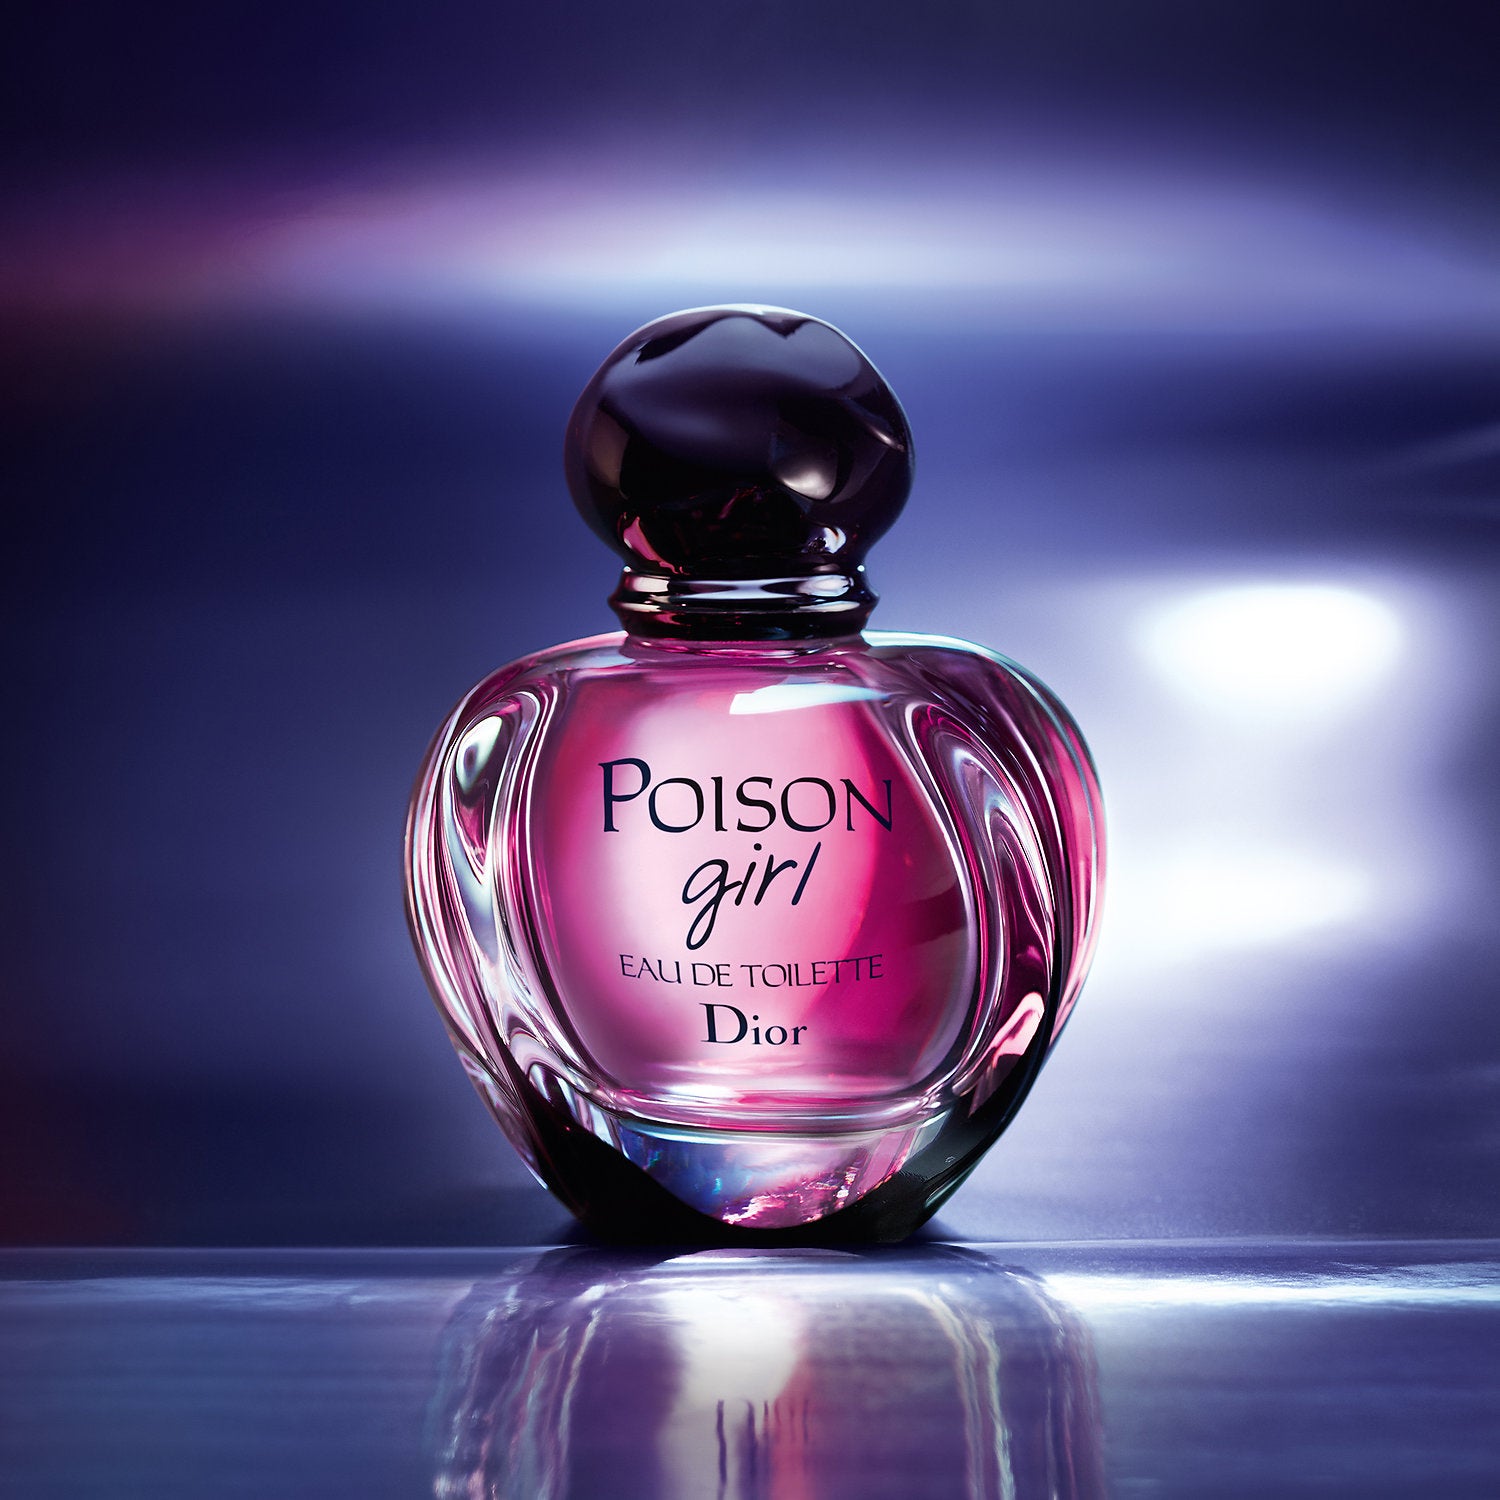 Buy Christian Dior Poison Girl EDT for Women - 100ml in Pakistan